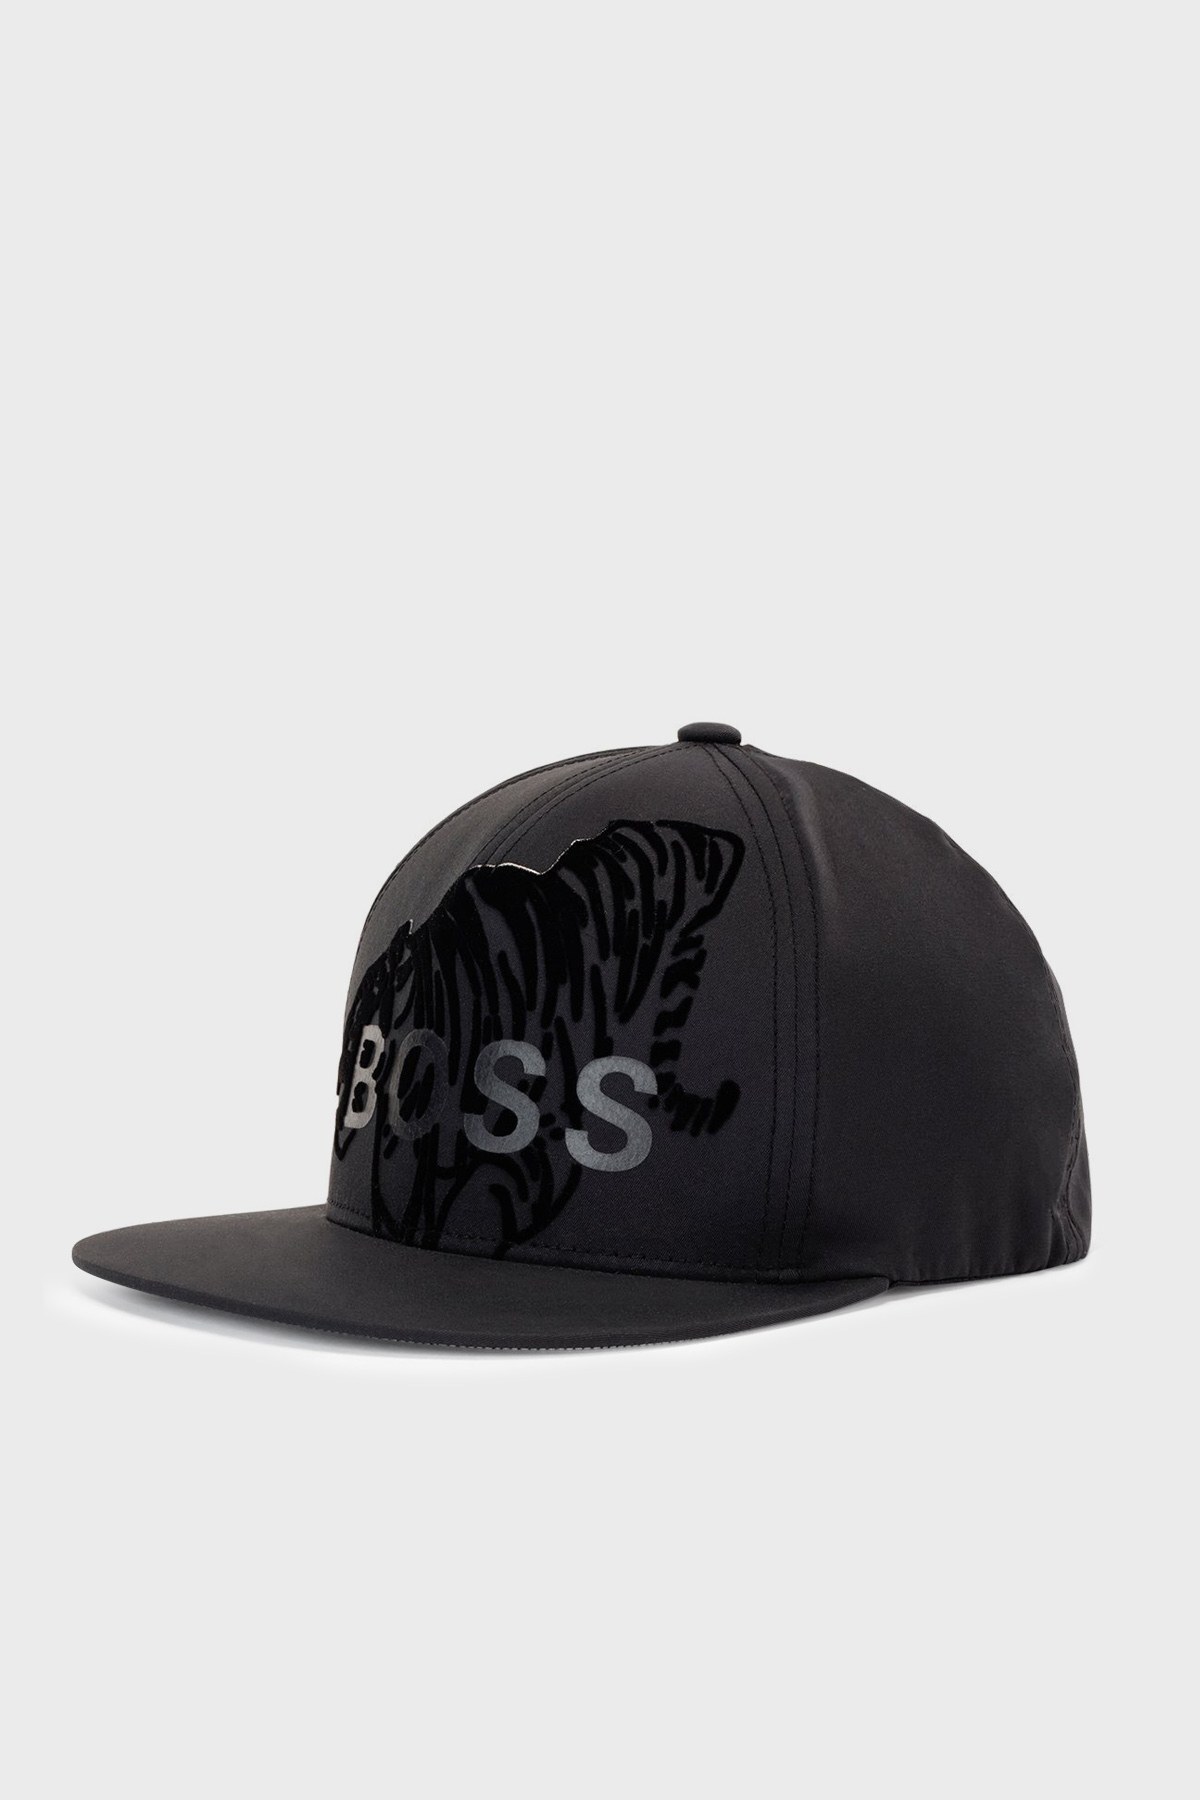 Boss Logo Detaylı Su Geçirmez Erkek Şapka 50461905 001 SİYAH